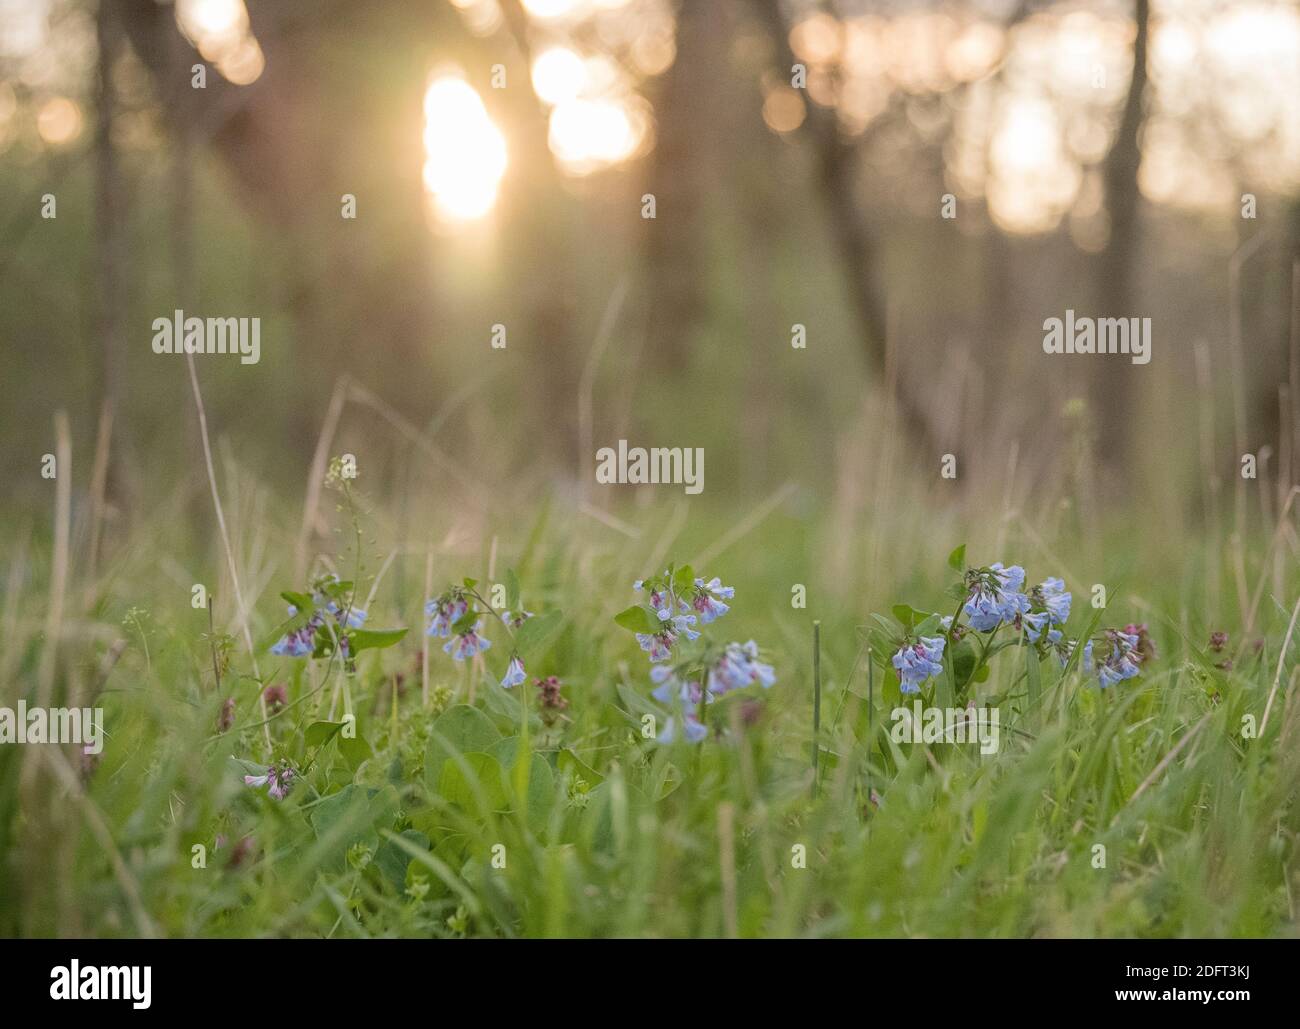 Virginia bluebells o Mertensia virginica florecen en primavera en el suelo del bosque. Foto de stock